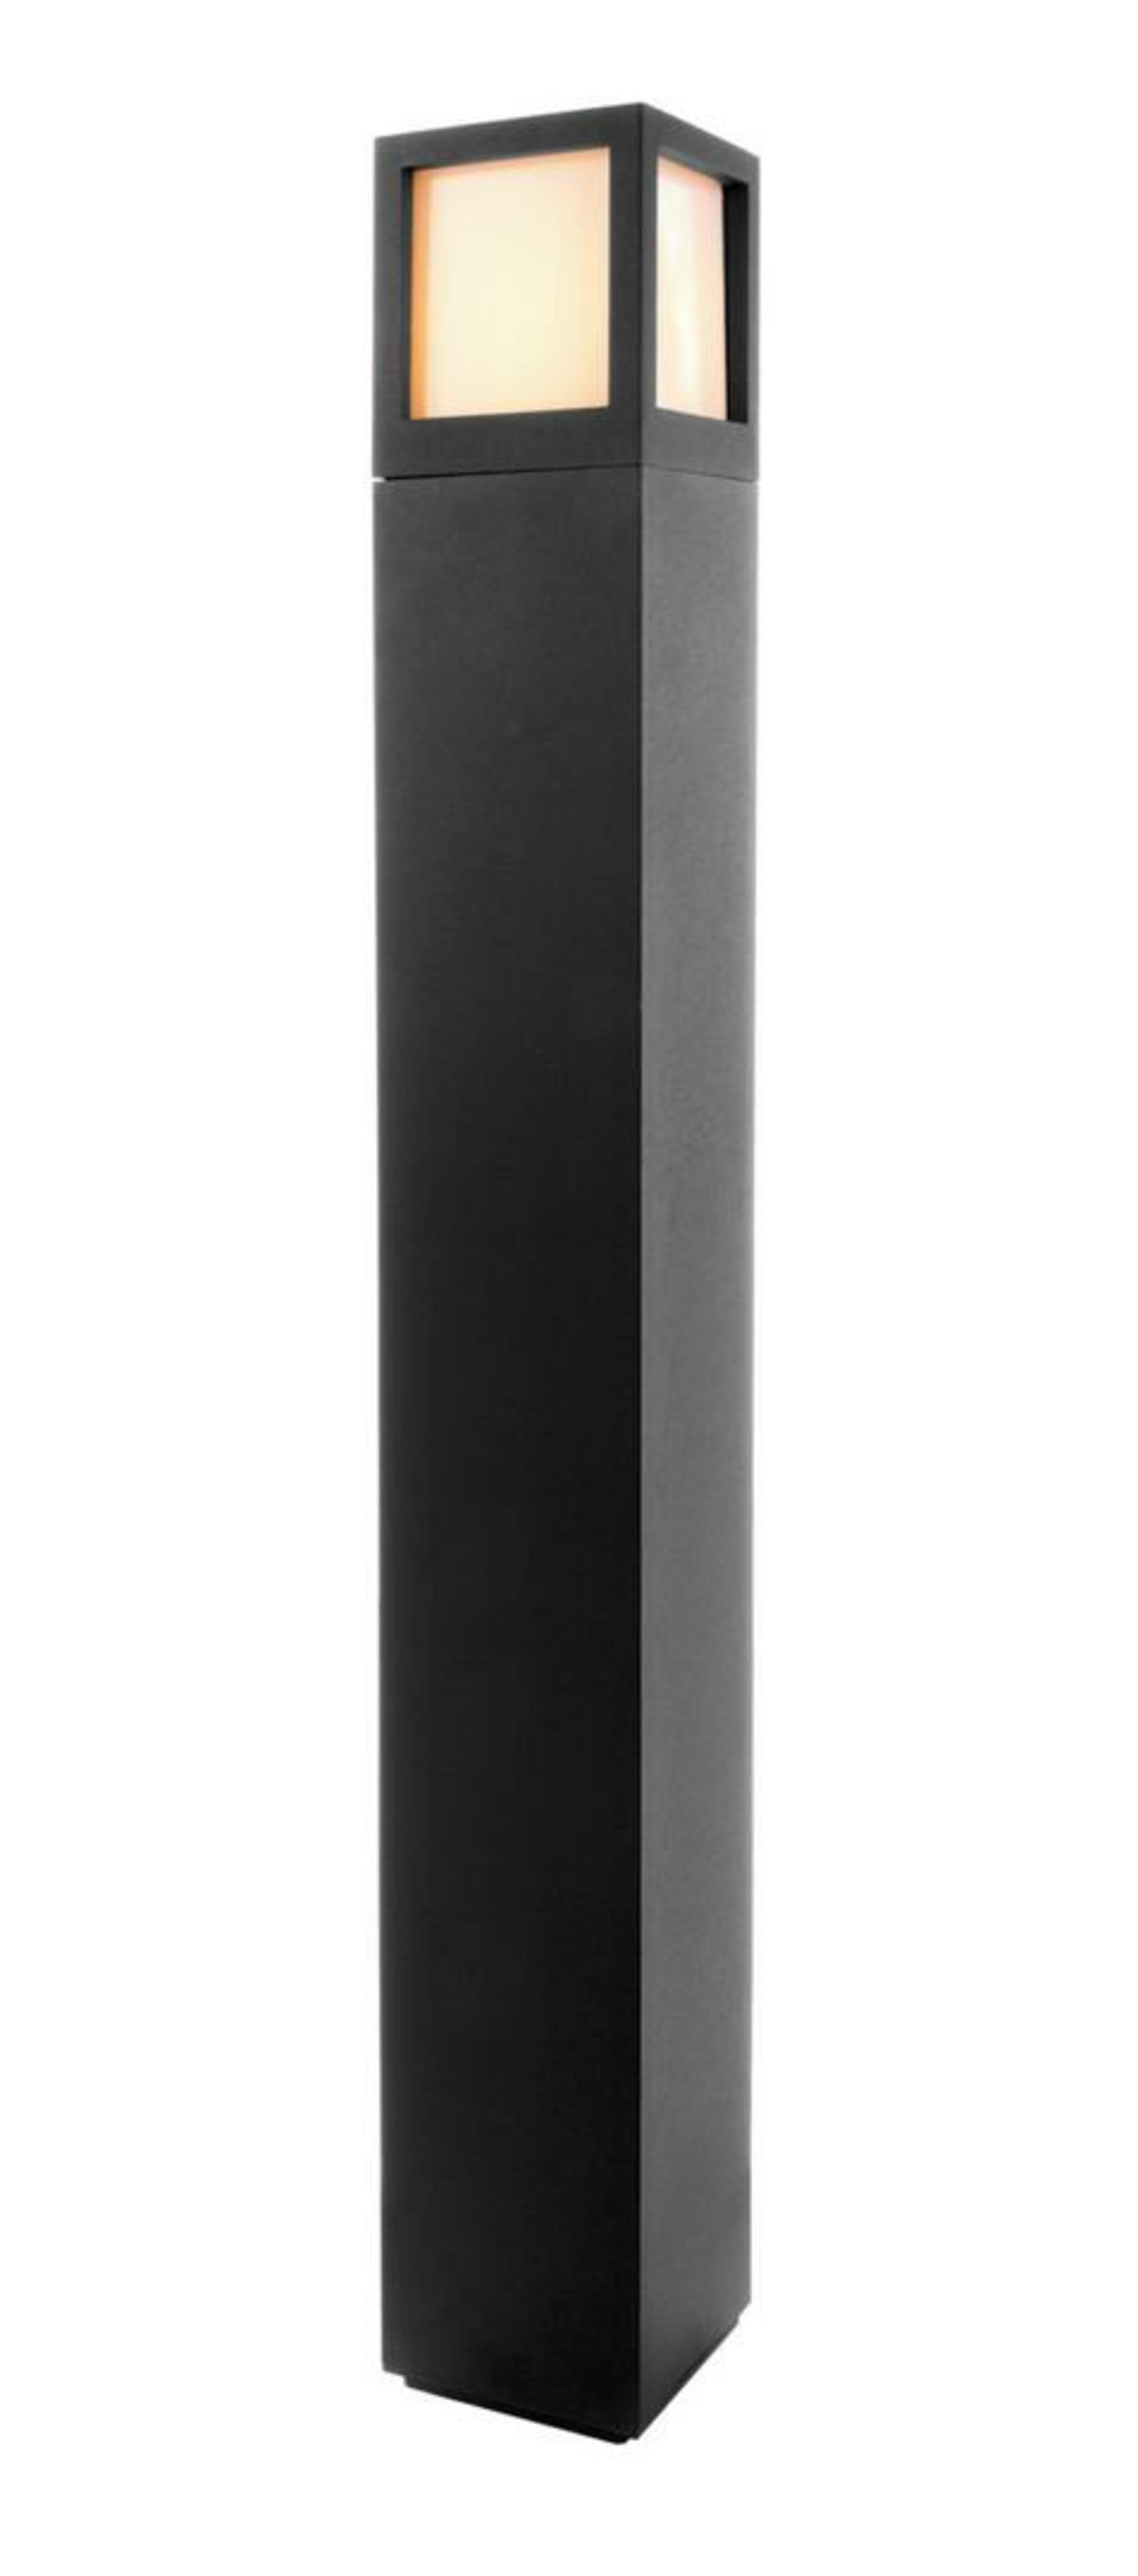 Light Impressions Deko-Light stojací svítidlo - Facado A 1000 mm, 1x max. 20 W E27, antracit 730498